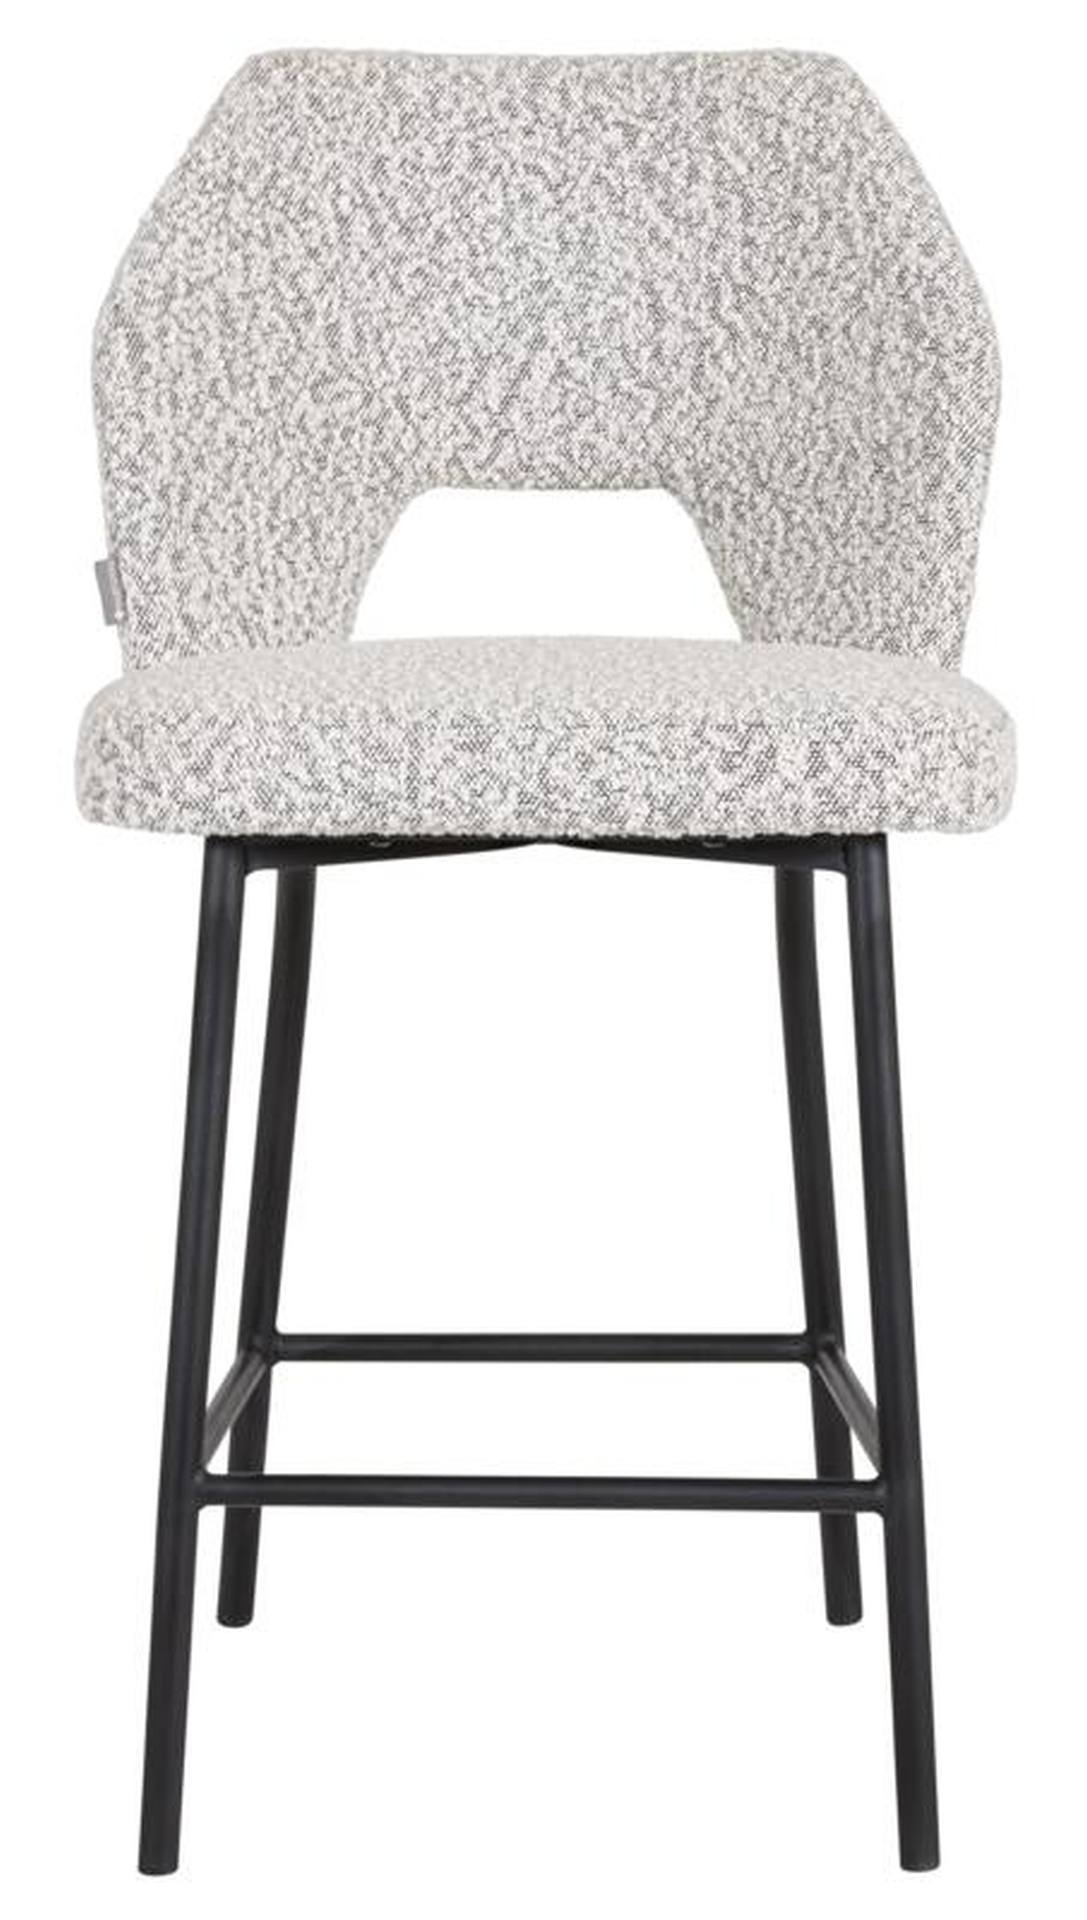 Der Barstuhl Bloom überzeugt mit seinem modernem aber auch schlichtem Design. Gefertigt wurde der Stuhl aus einem Boucle Stoff, welcher einen Hellgrauen Farbton besitzt. Das Gestell ist aus Metall und ist Schwarz.